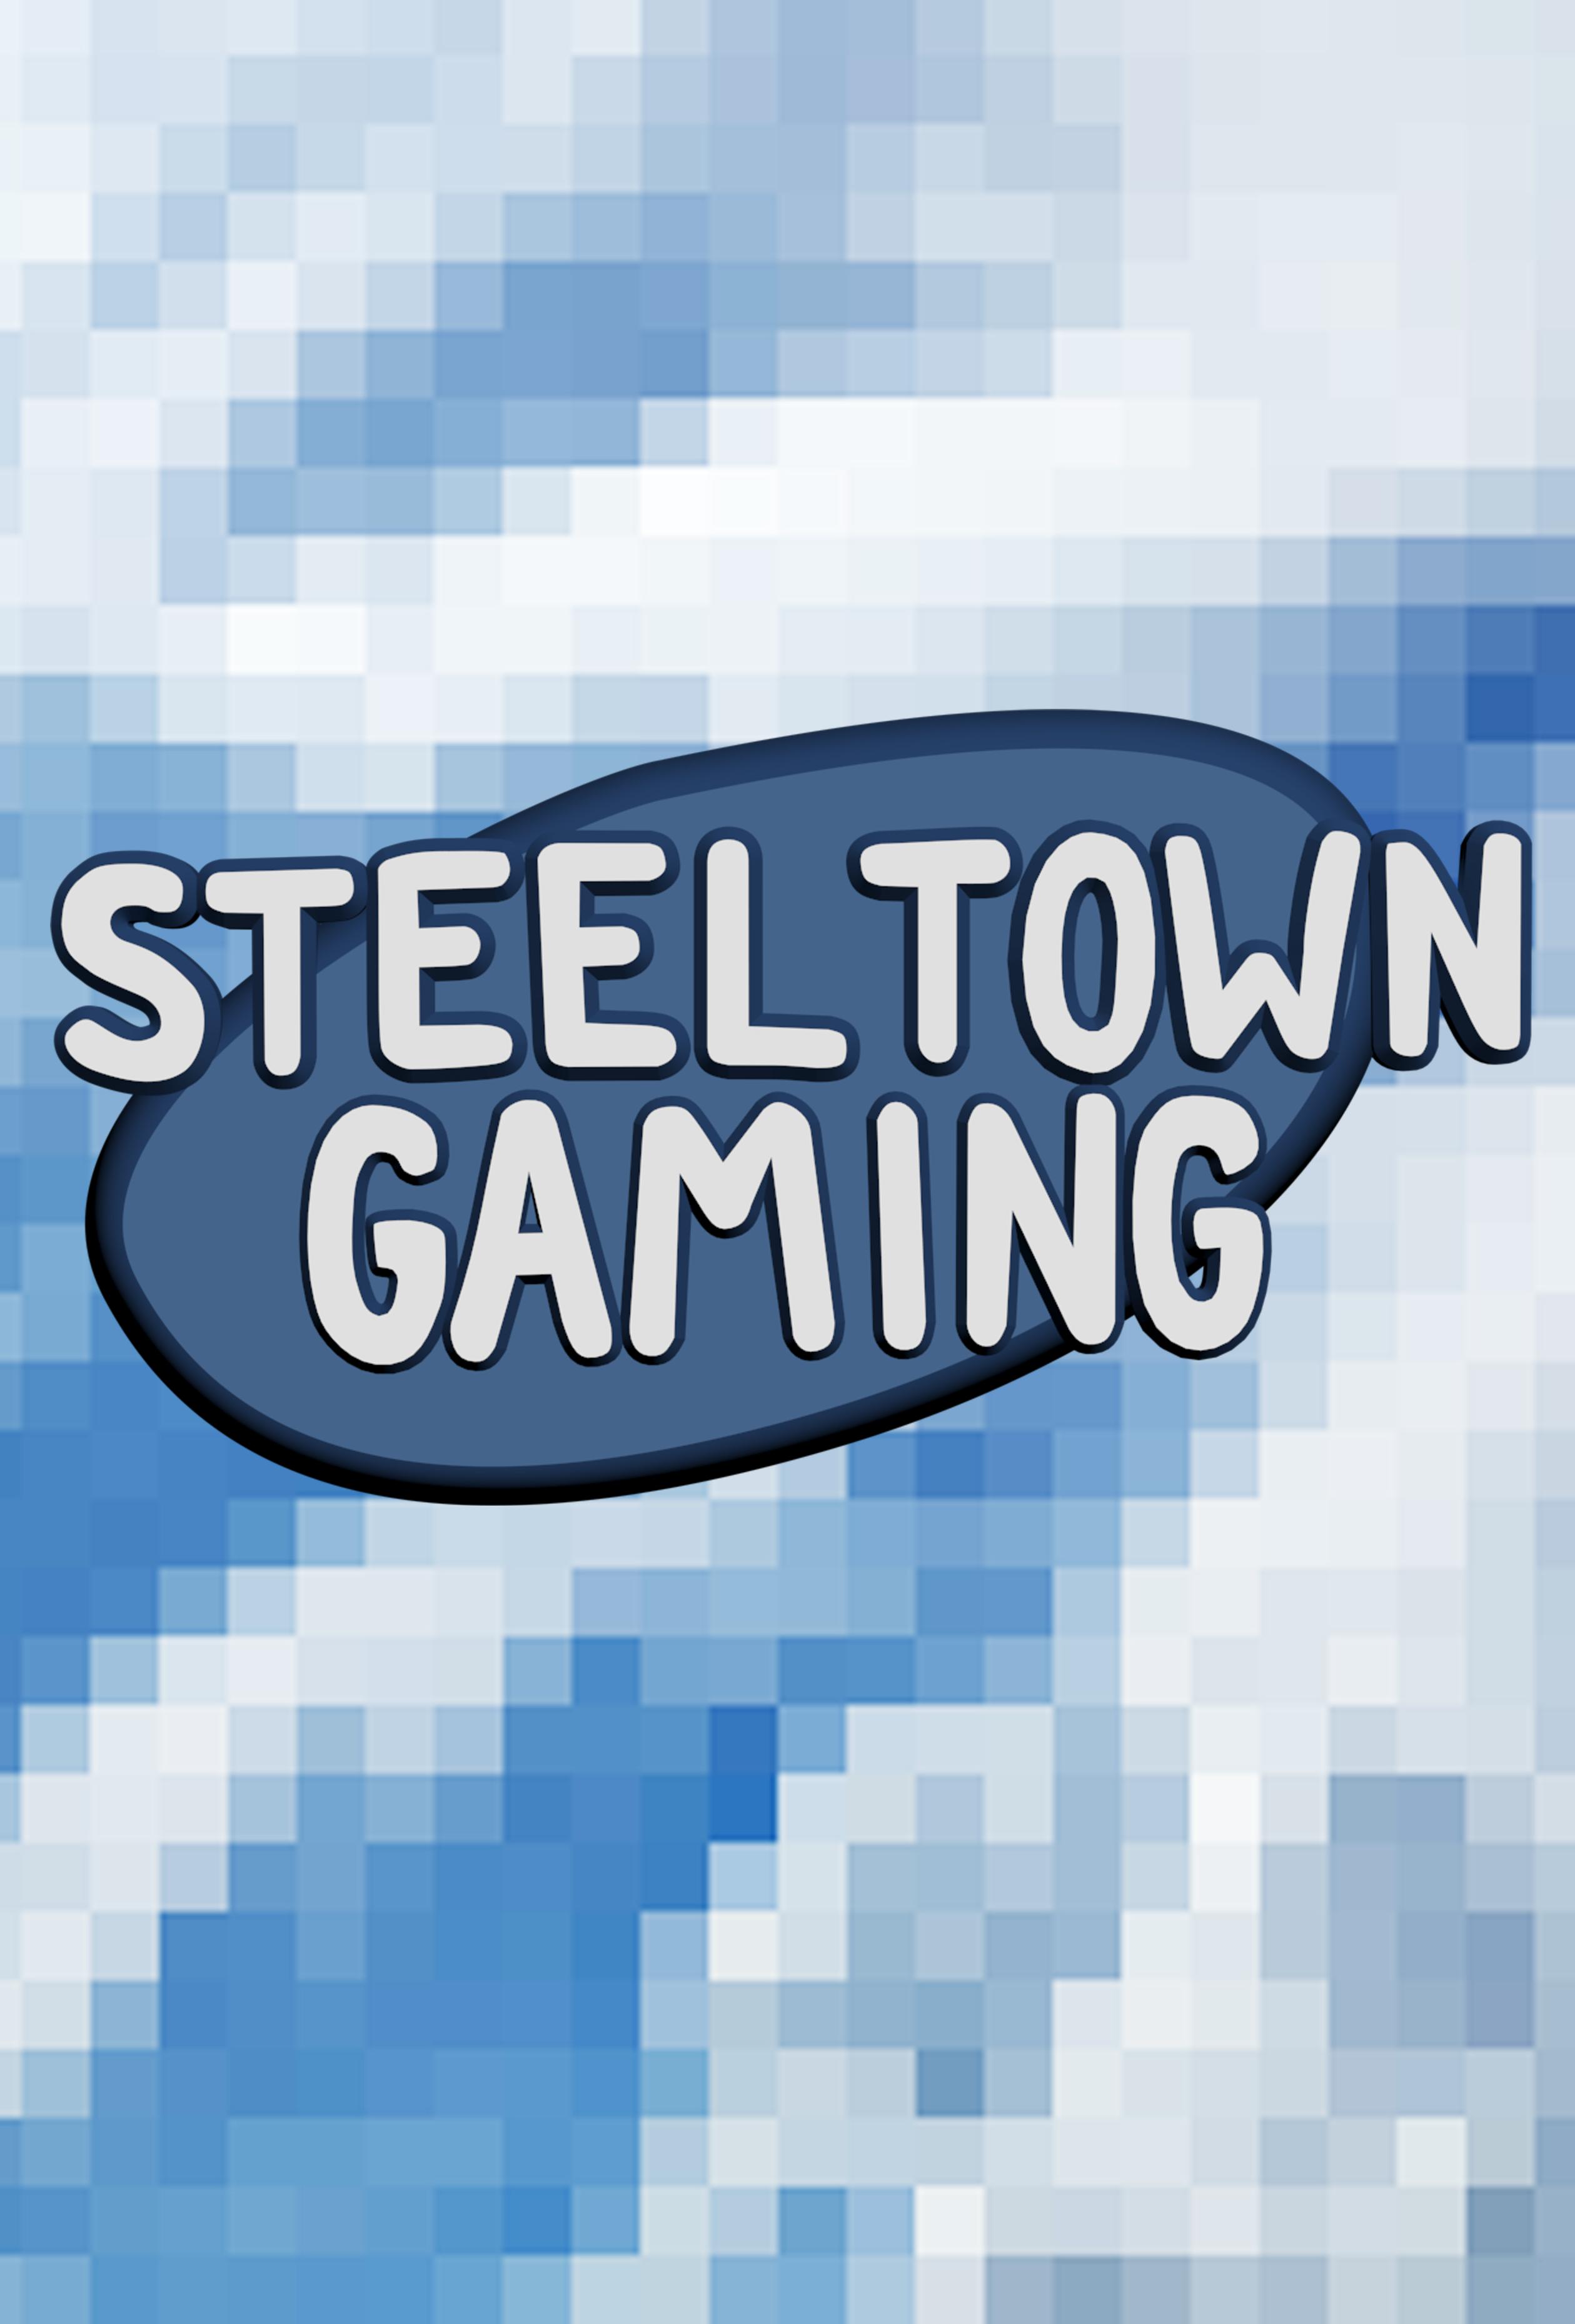 Steel Town Gaming